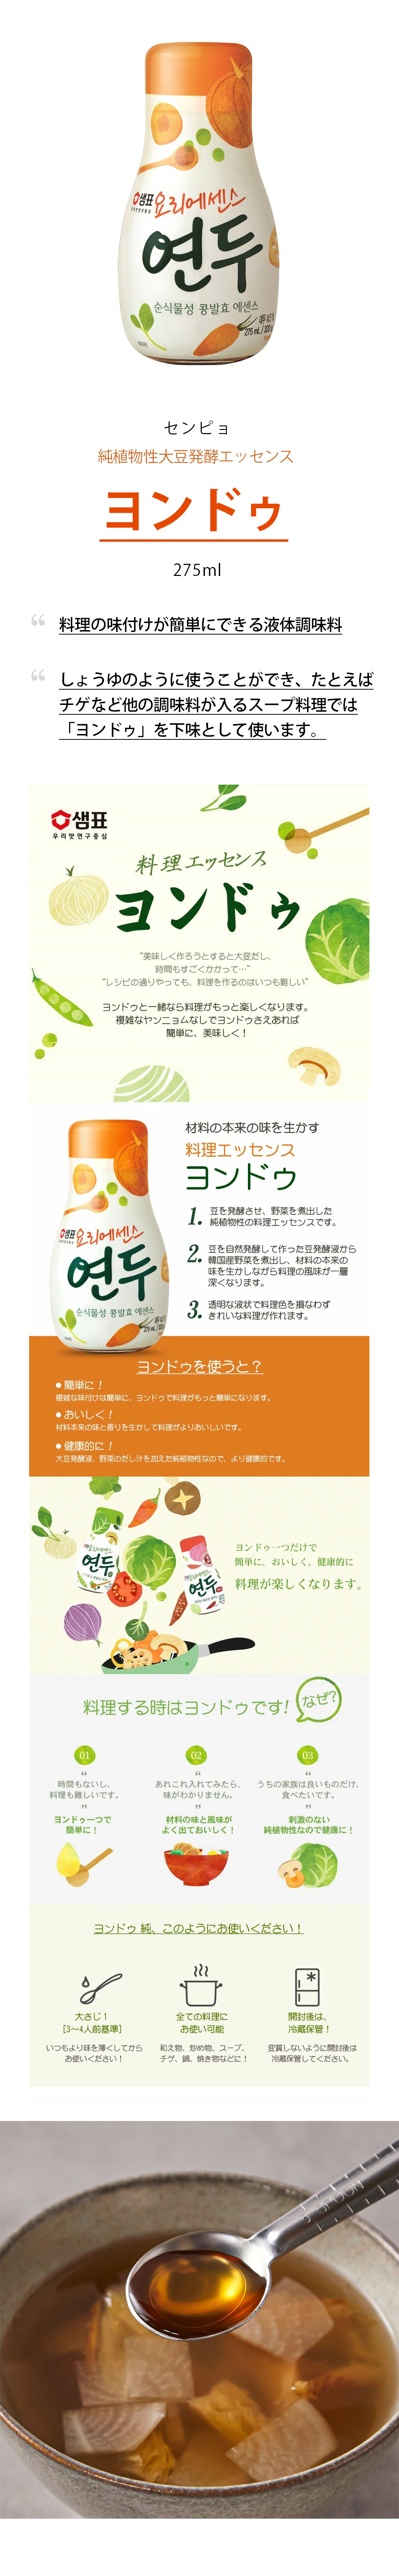 センピョ] ヨンドゥ / 275ml 純植物性大豆発酵エッセンス : 3327 : 韓国市場 - 通販 - Yahoo!ショッピング